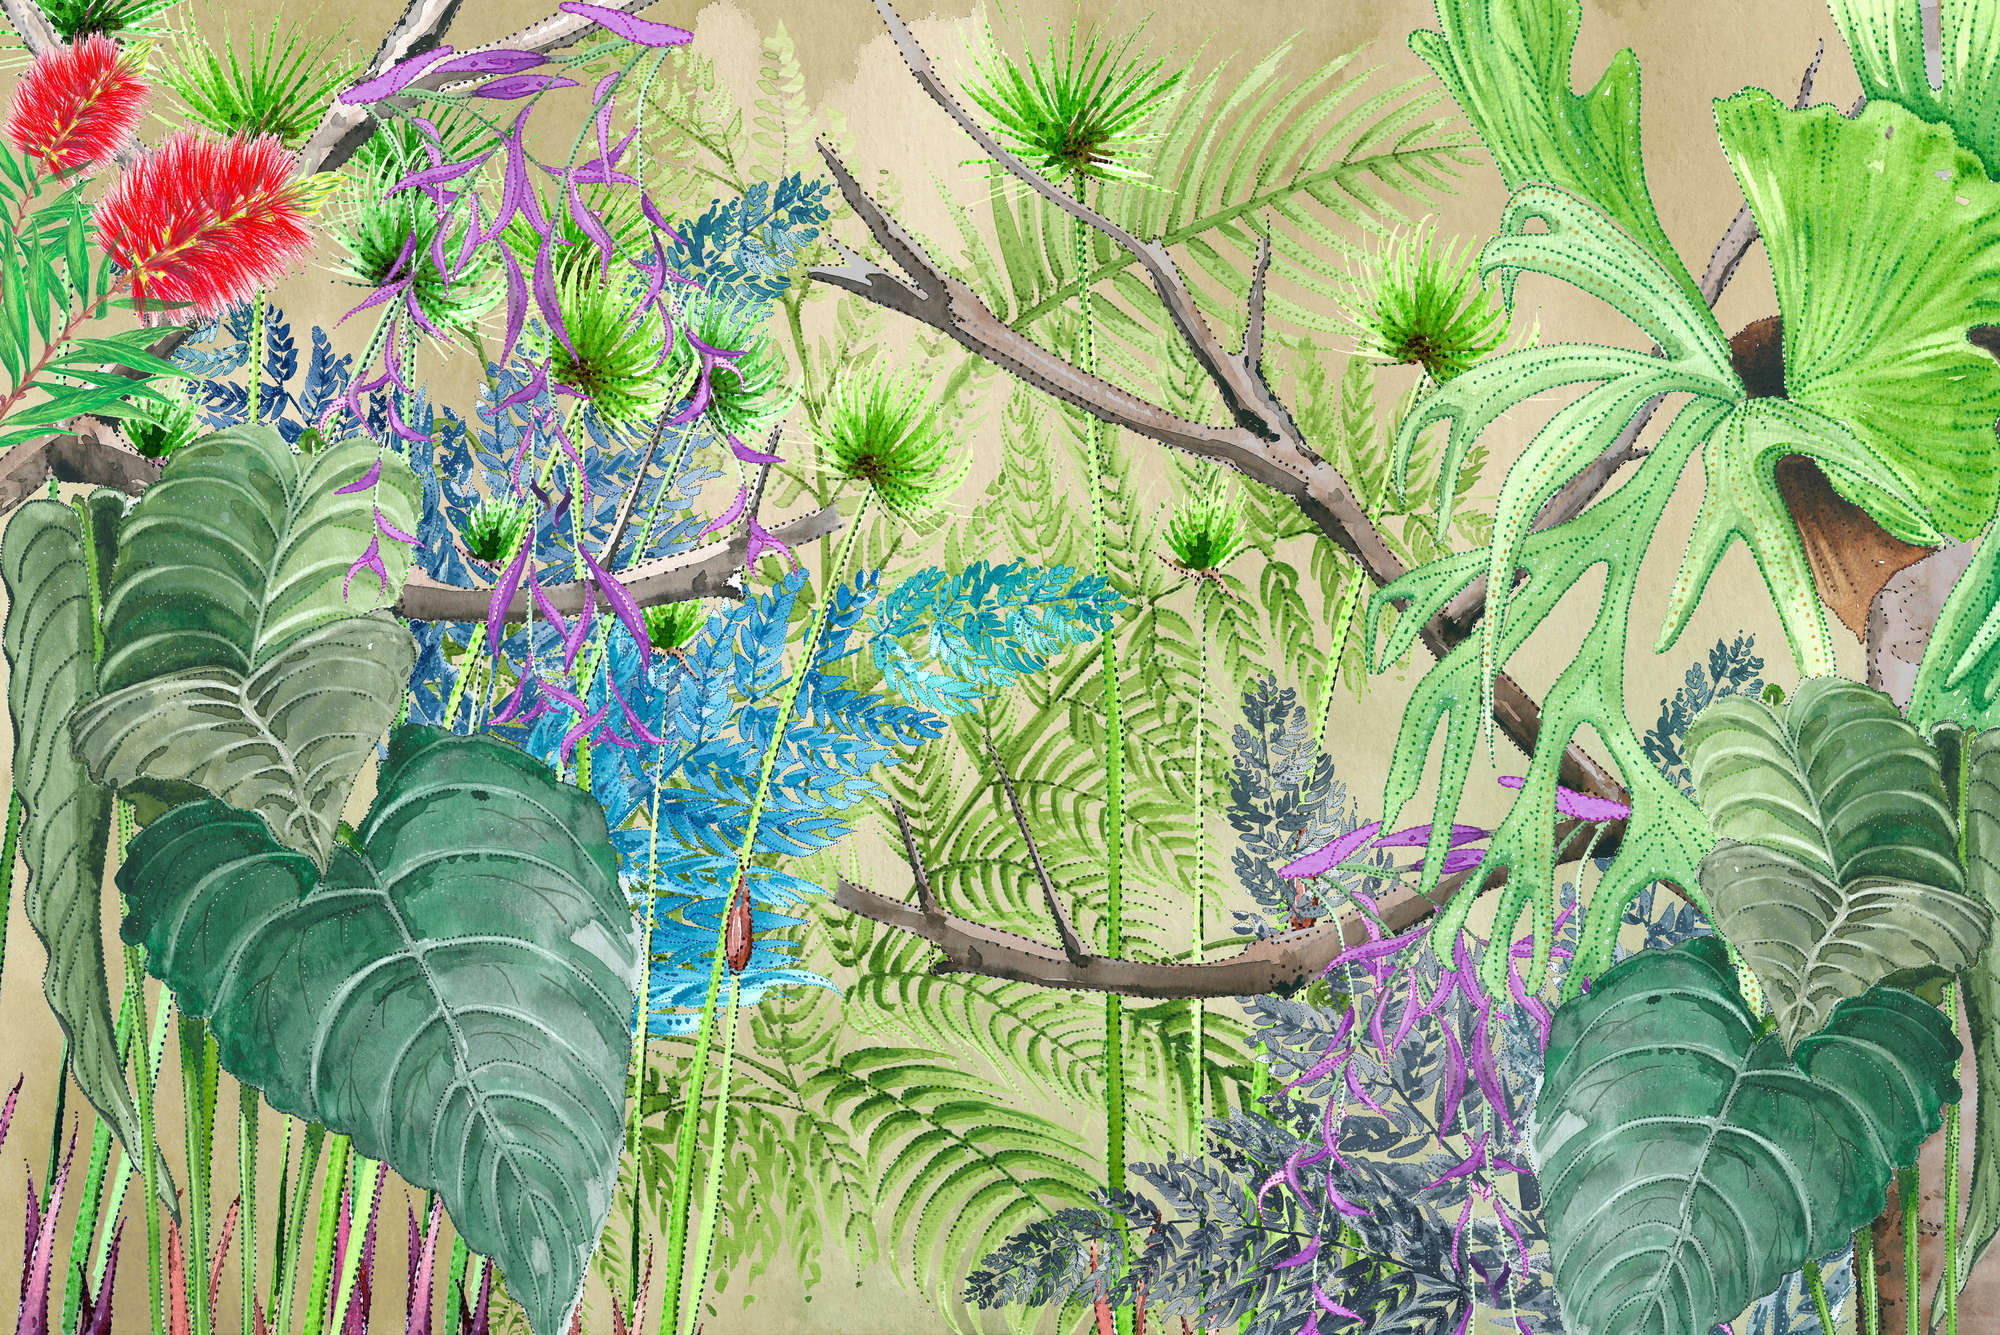             Jungle Behang met Bloemen in Blauw en Groen op Premium Smooth Fleece
        